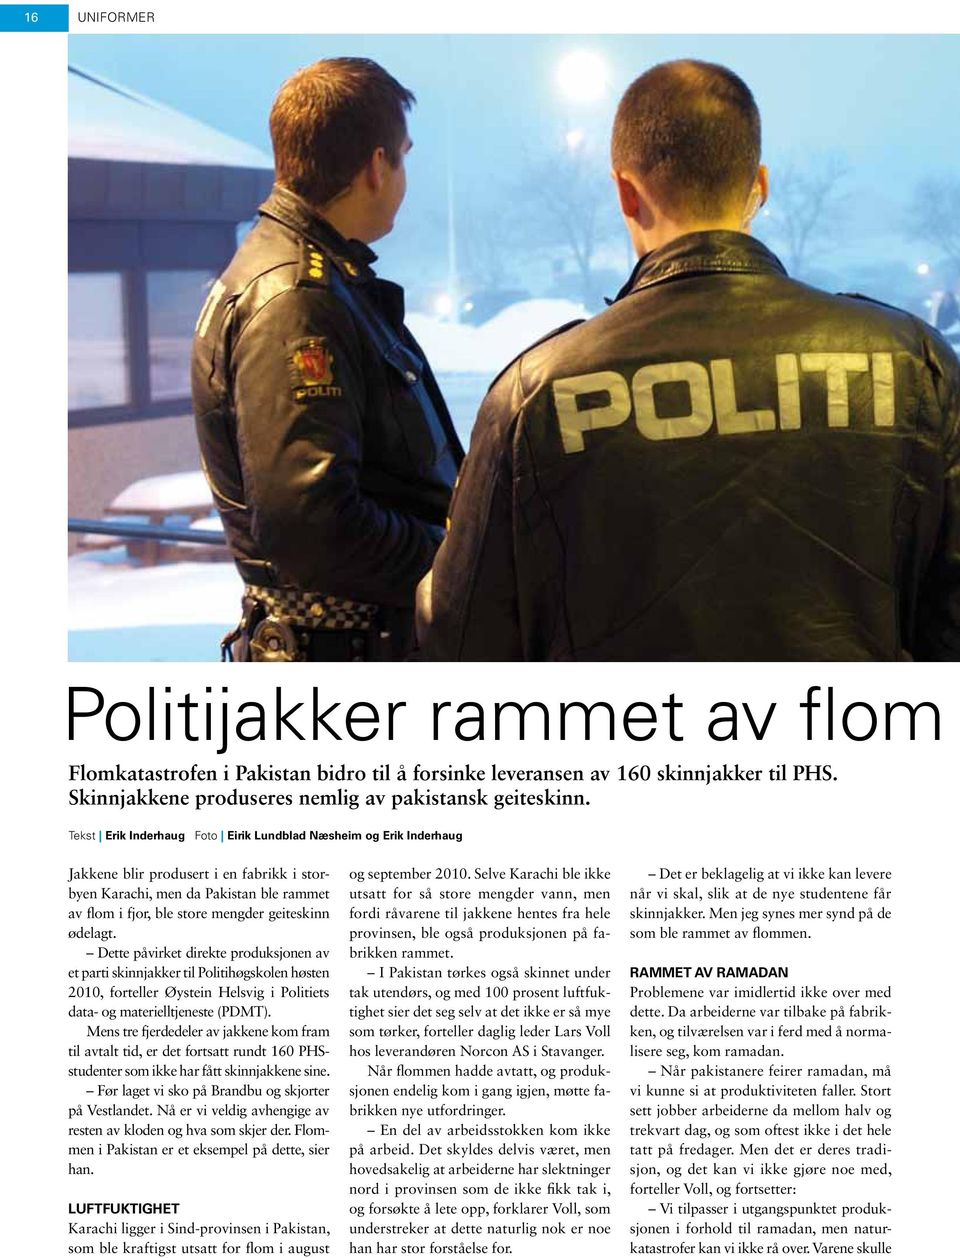 ødelagt. Dette påvirket direkte produksjonen av et parti skinnjakker til Politihøgskolen høsten 2010, forteller Øystein Helsvig i Politiets data- og materielltjeneste (PDMT).